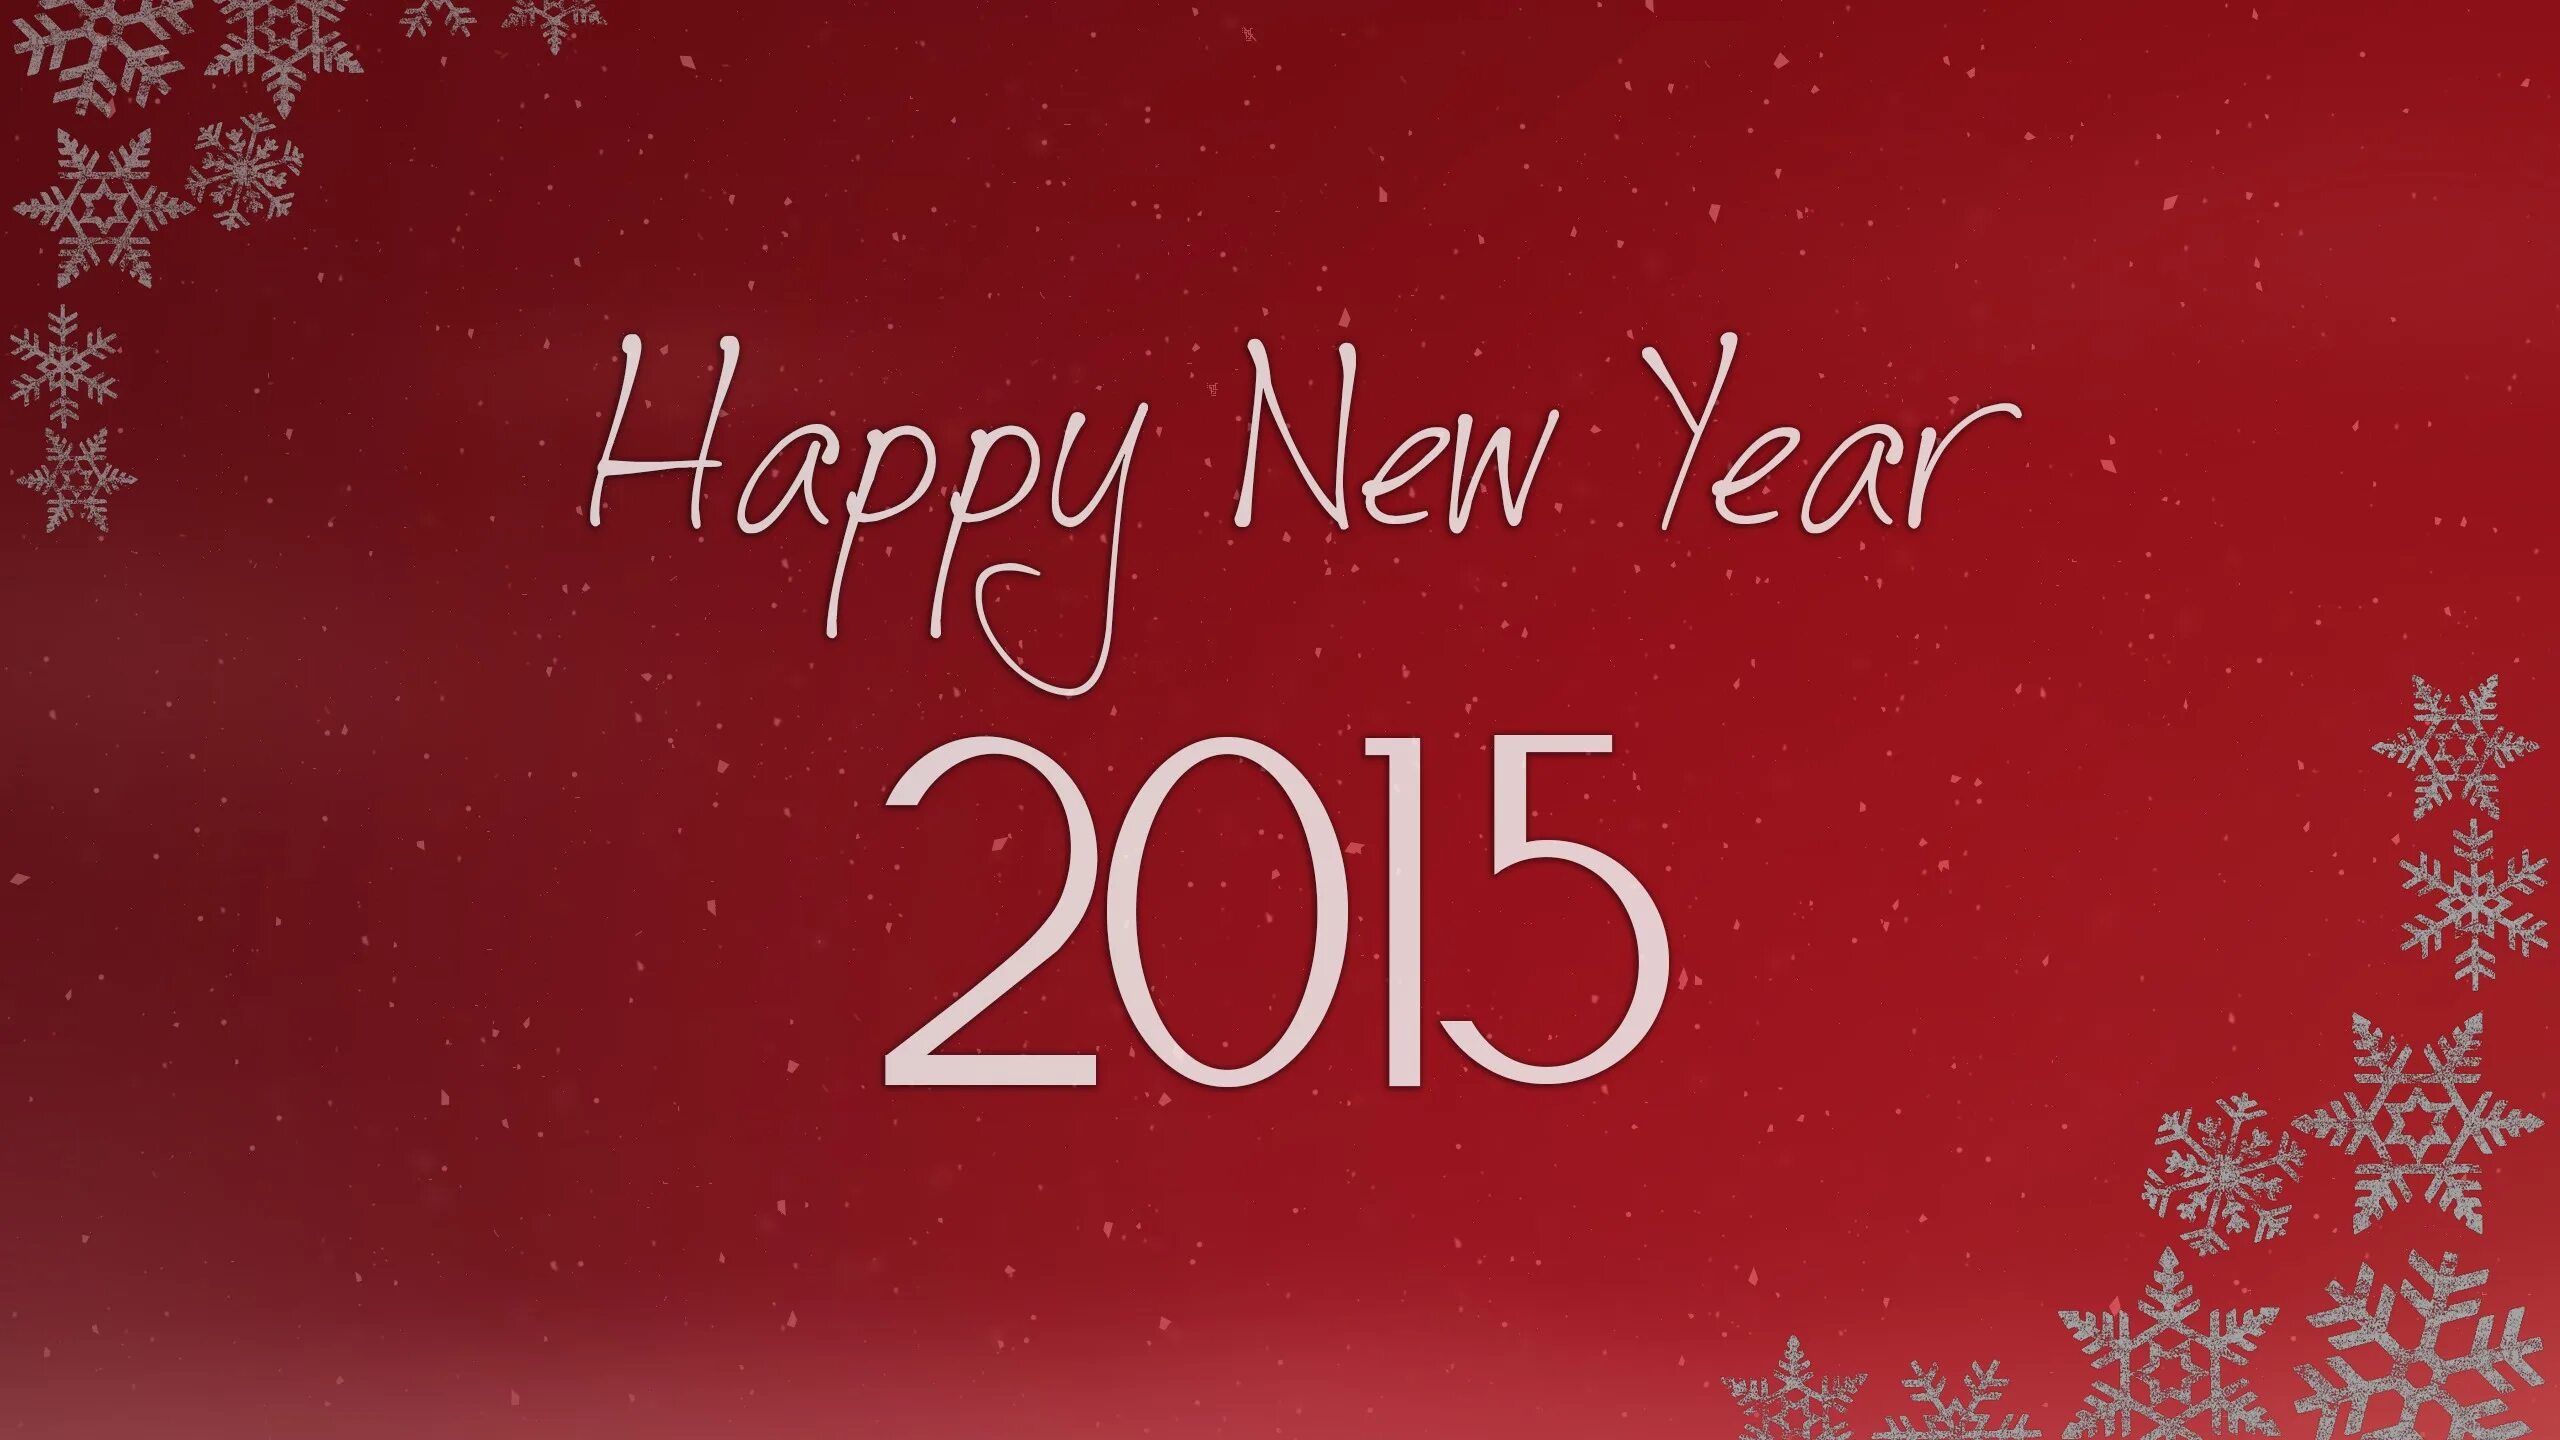 Хэппи Нью. Хэппи Нью еар. Обои для рабочего стола новый год 2015. Happy New year фон.